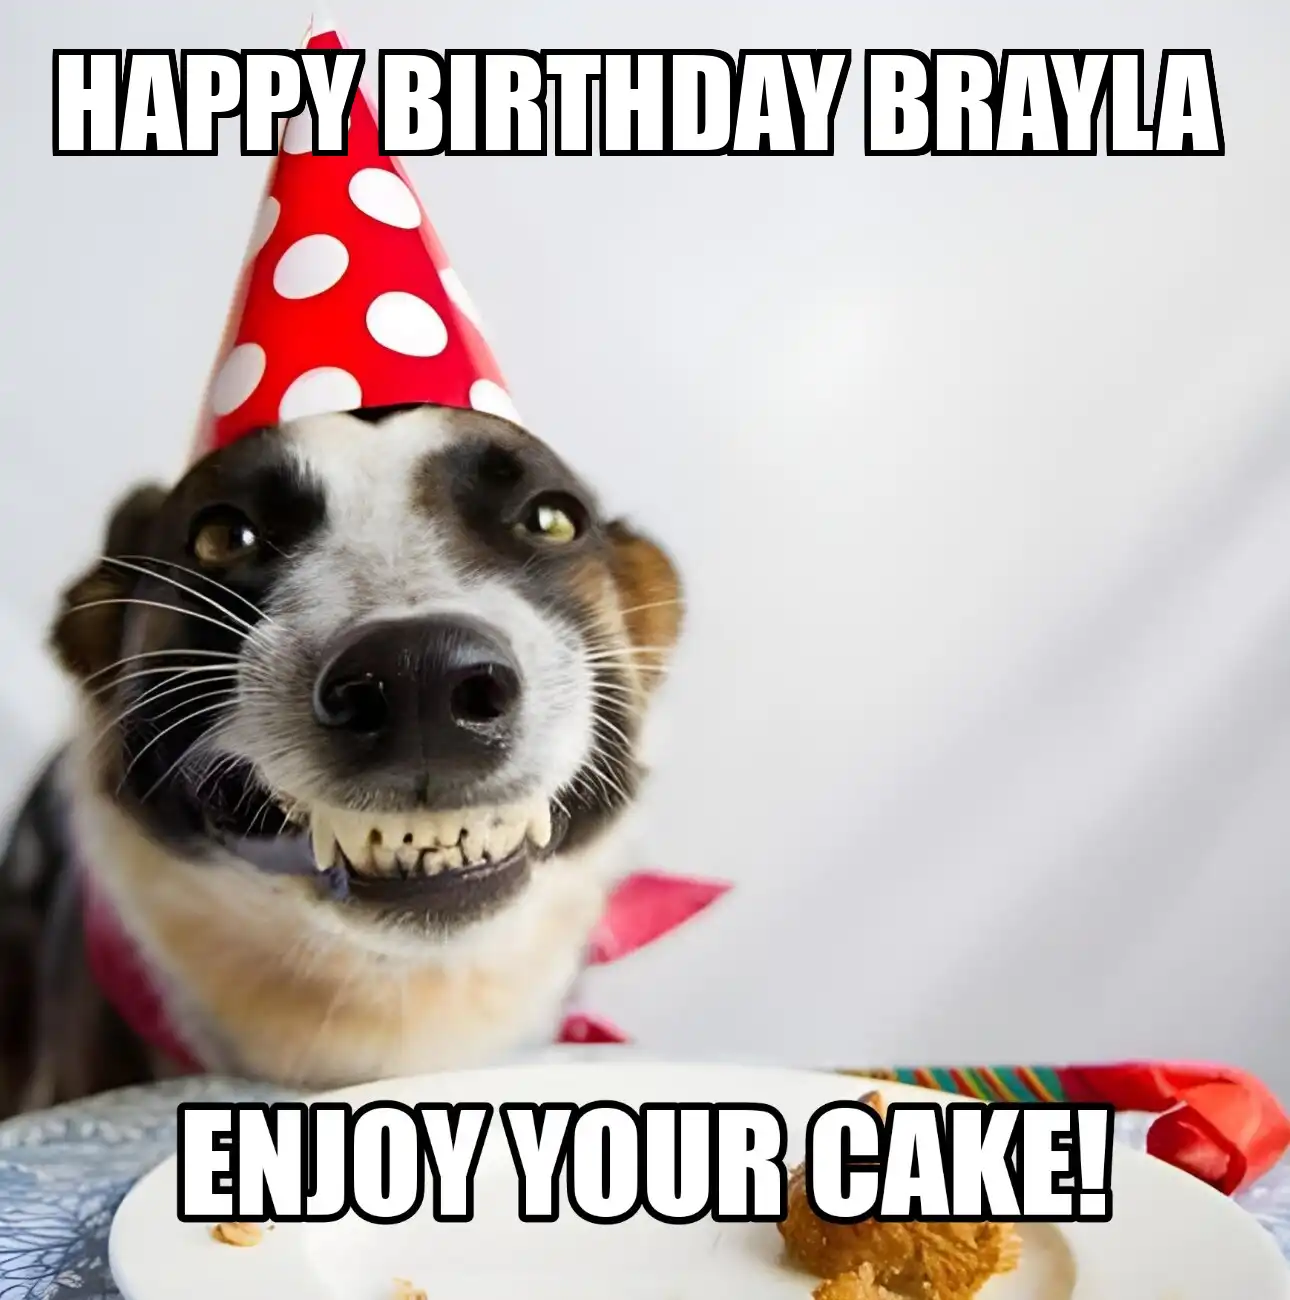 Happy Birthday Brayla Enjoy Your Cake Dog Meme